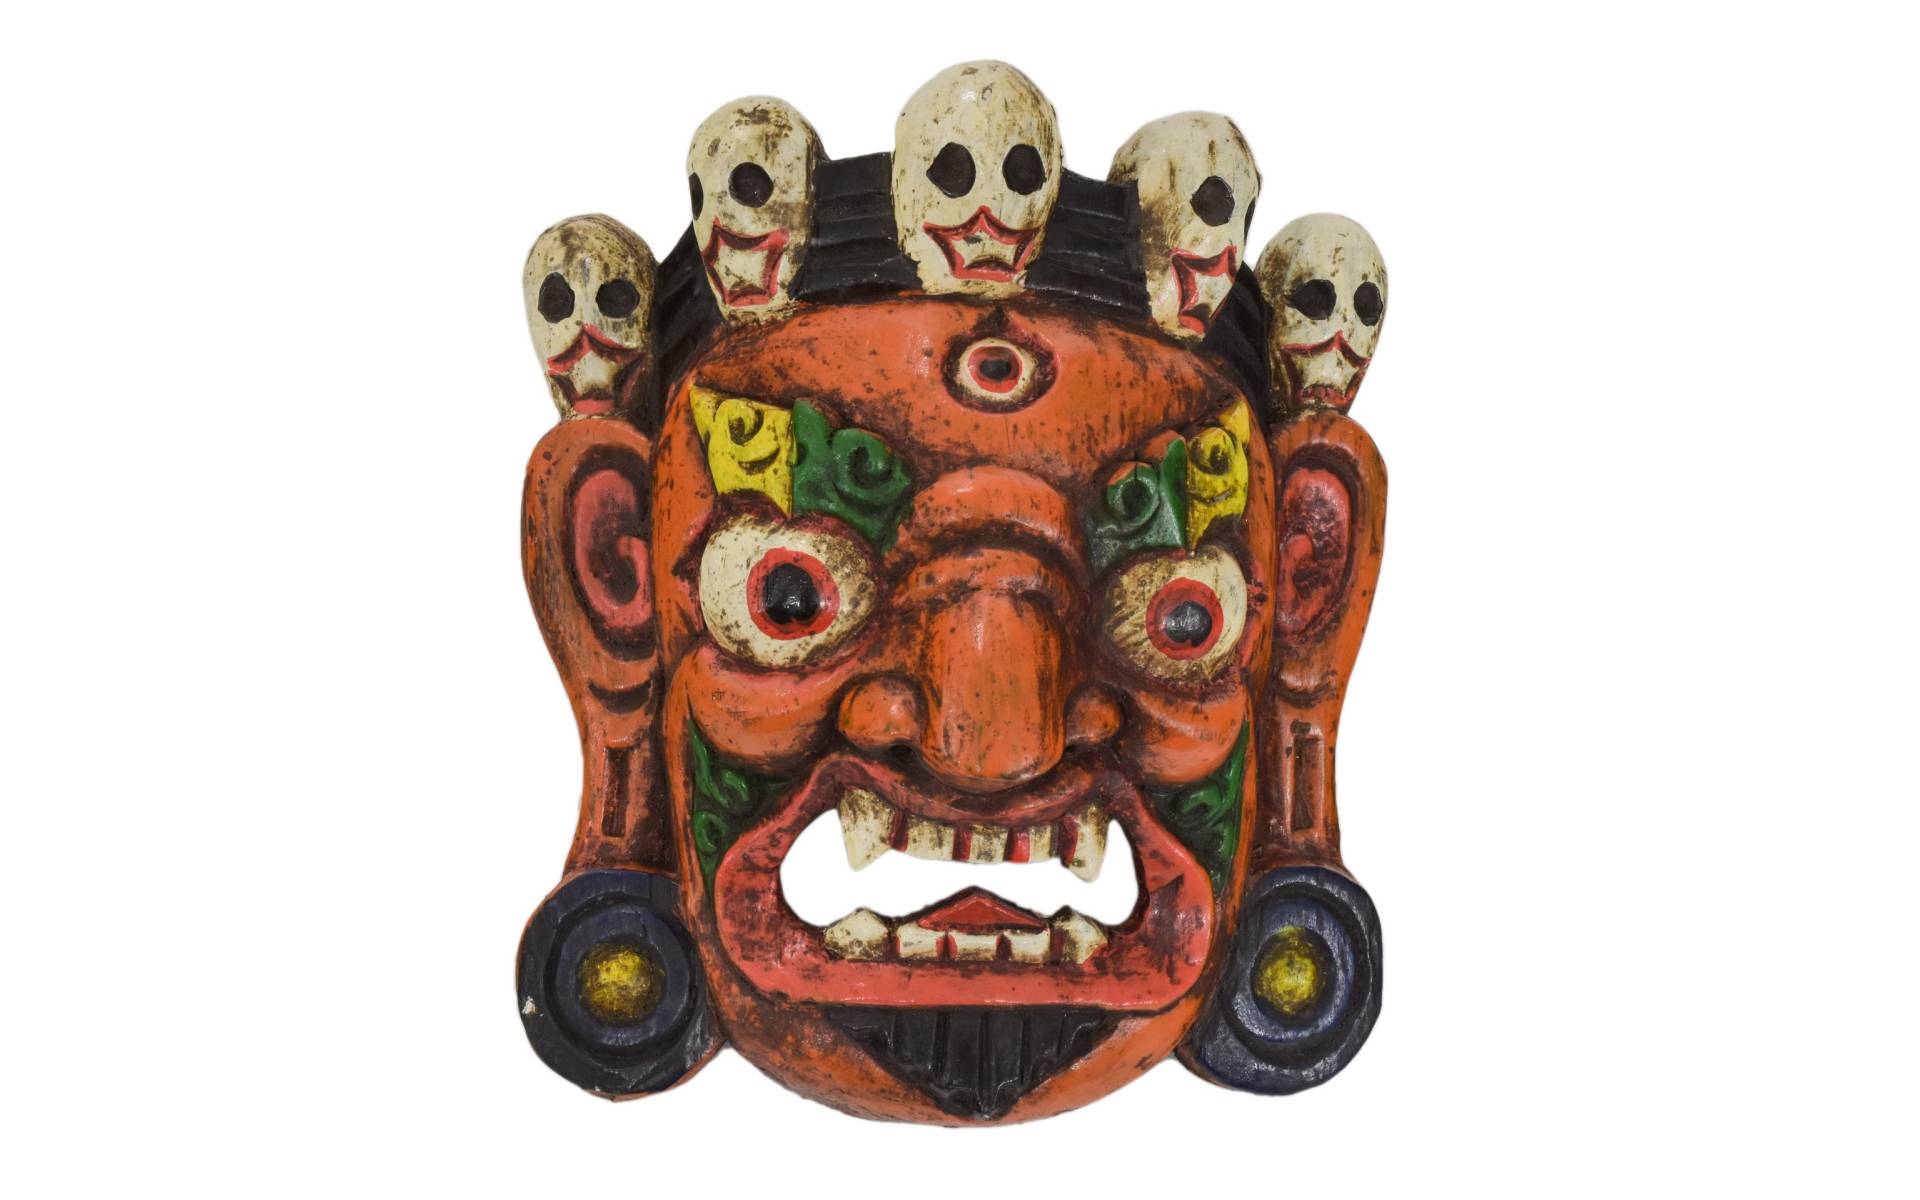 Drevená maska, "Bhairab", ručne vyrezávaná, maľovaná, 18x9x21cm